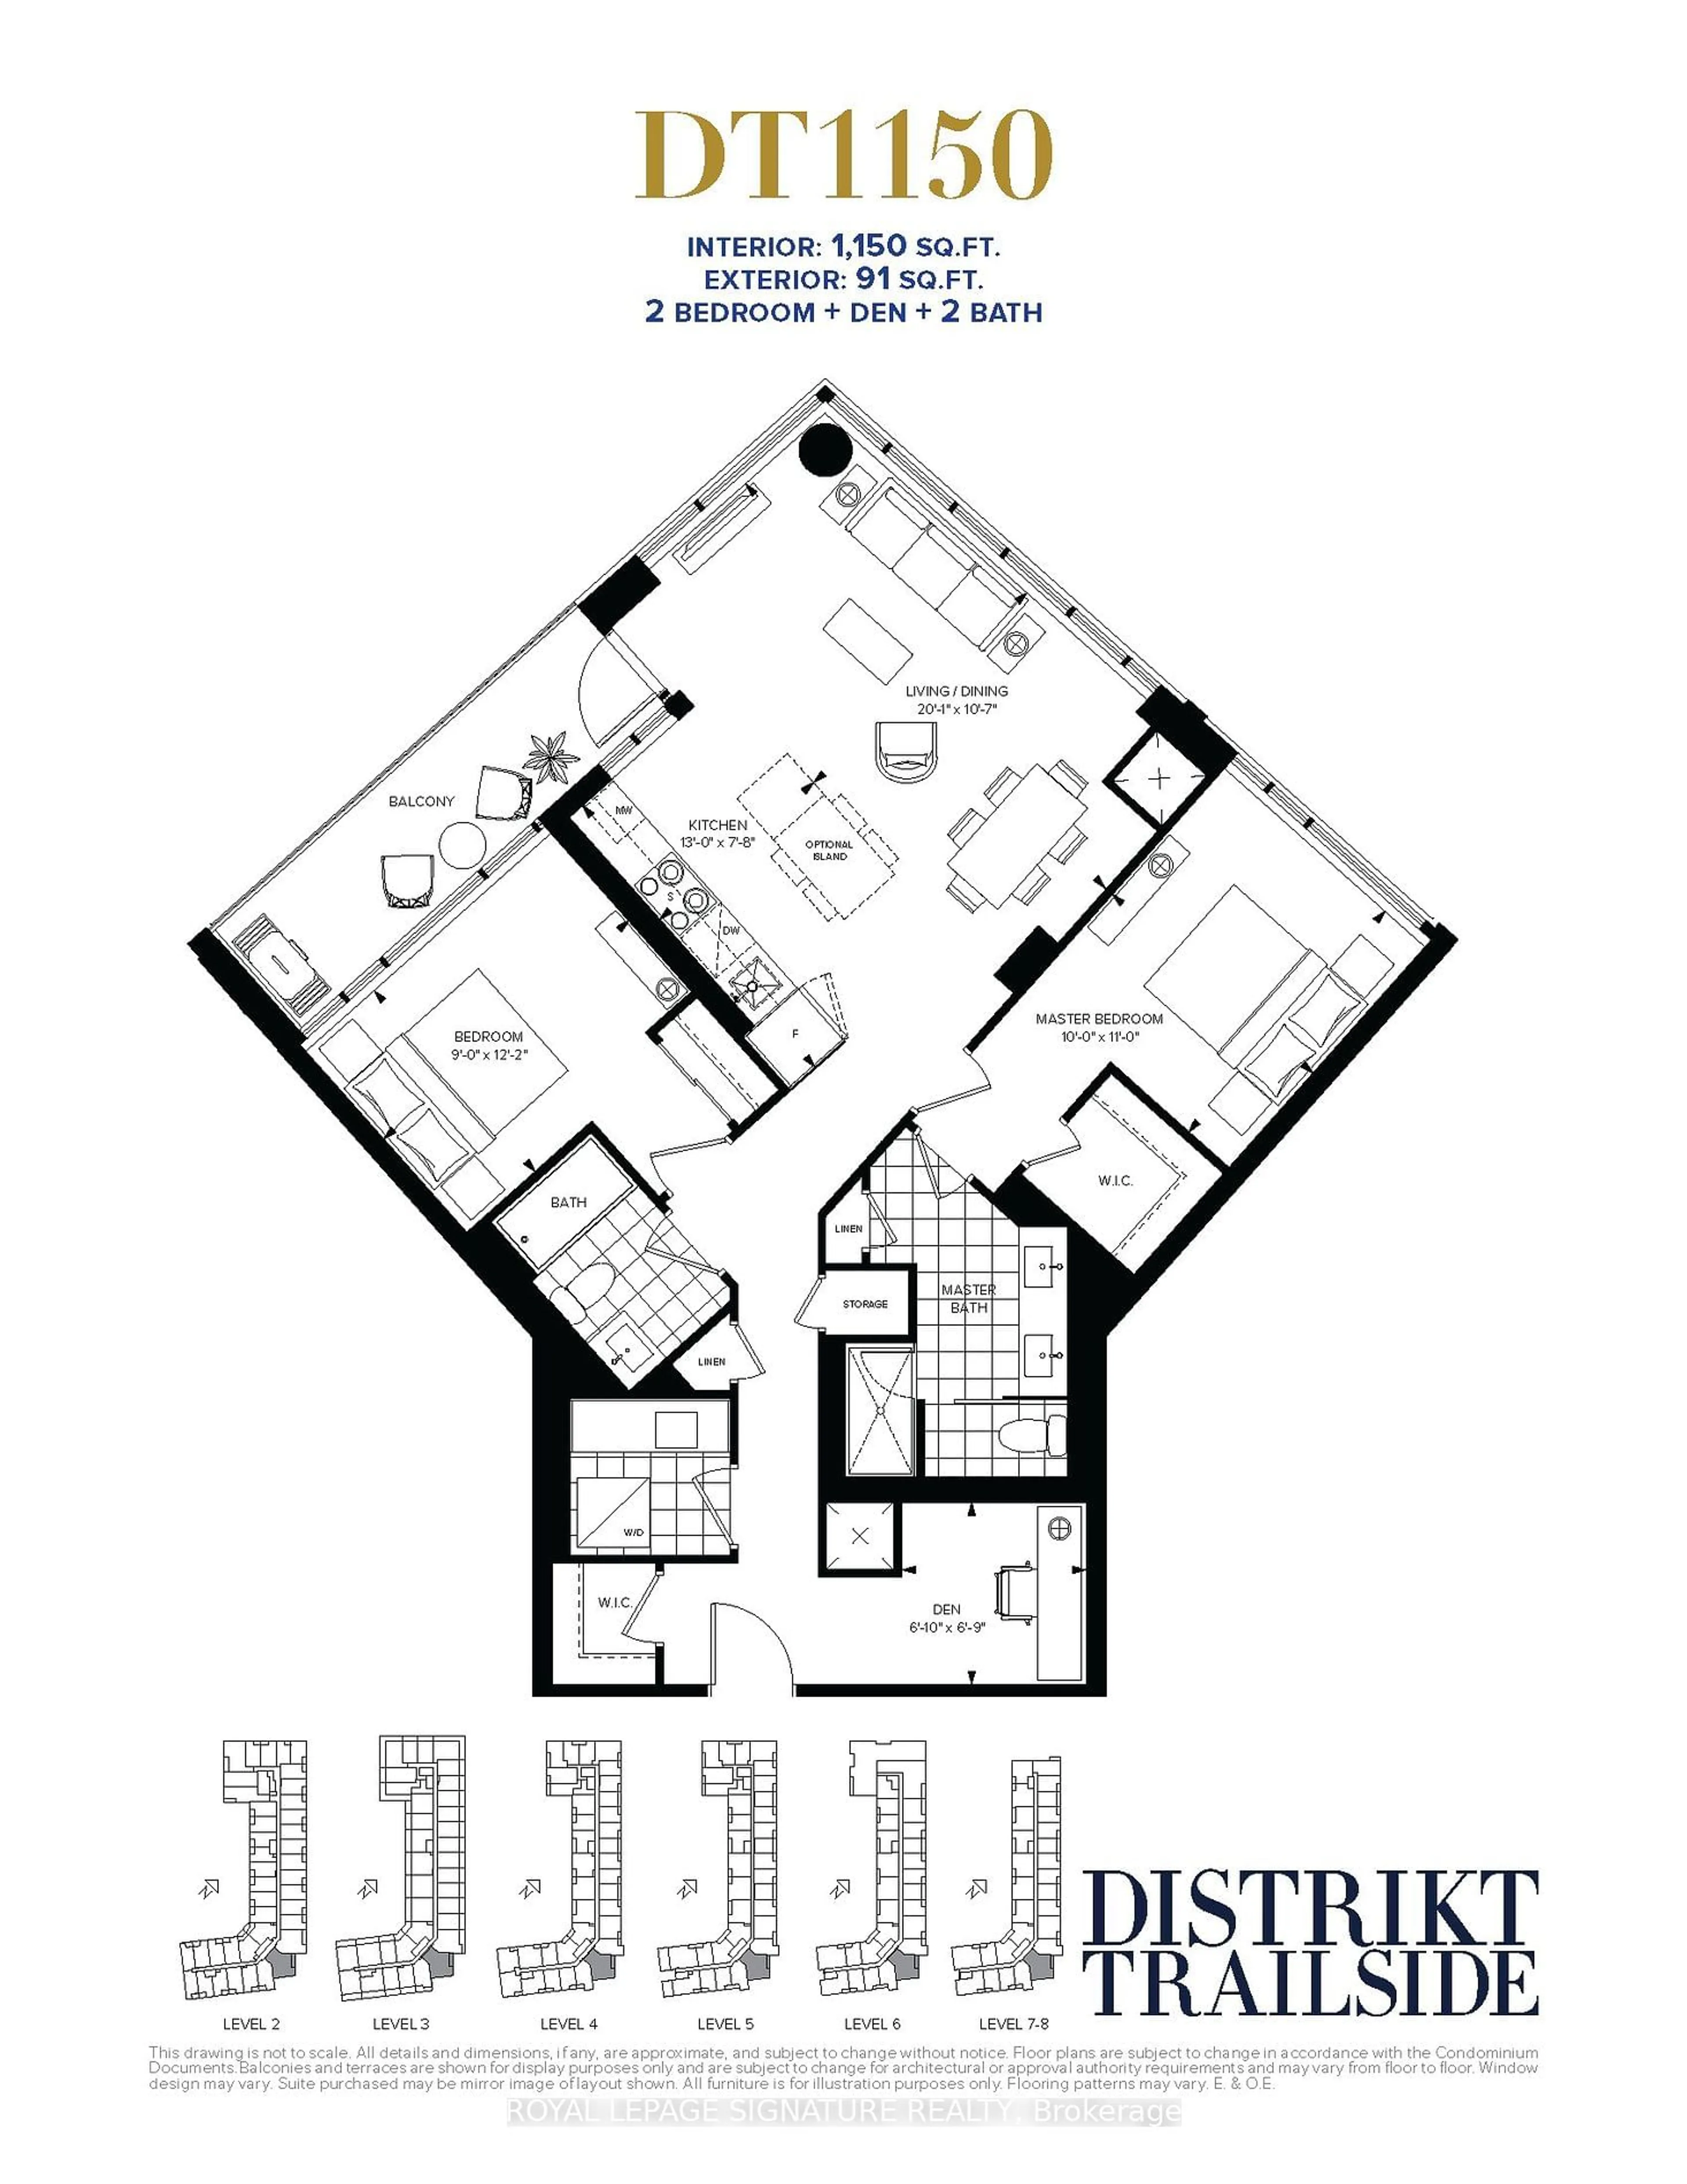 Floor plan for 405 Dundas St #426, Oakville Ontario L6M 4P9